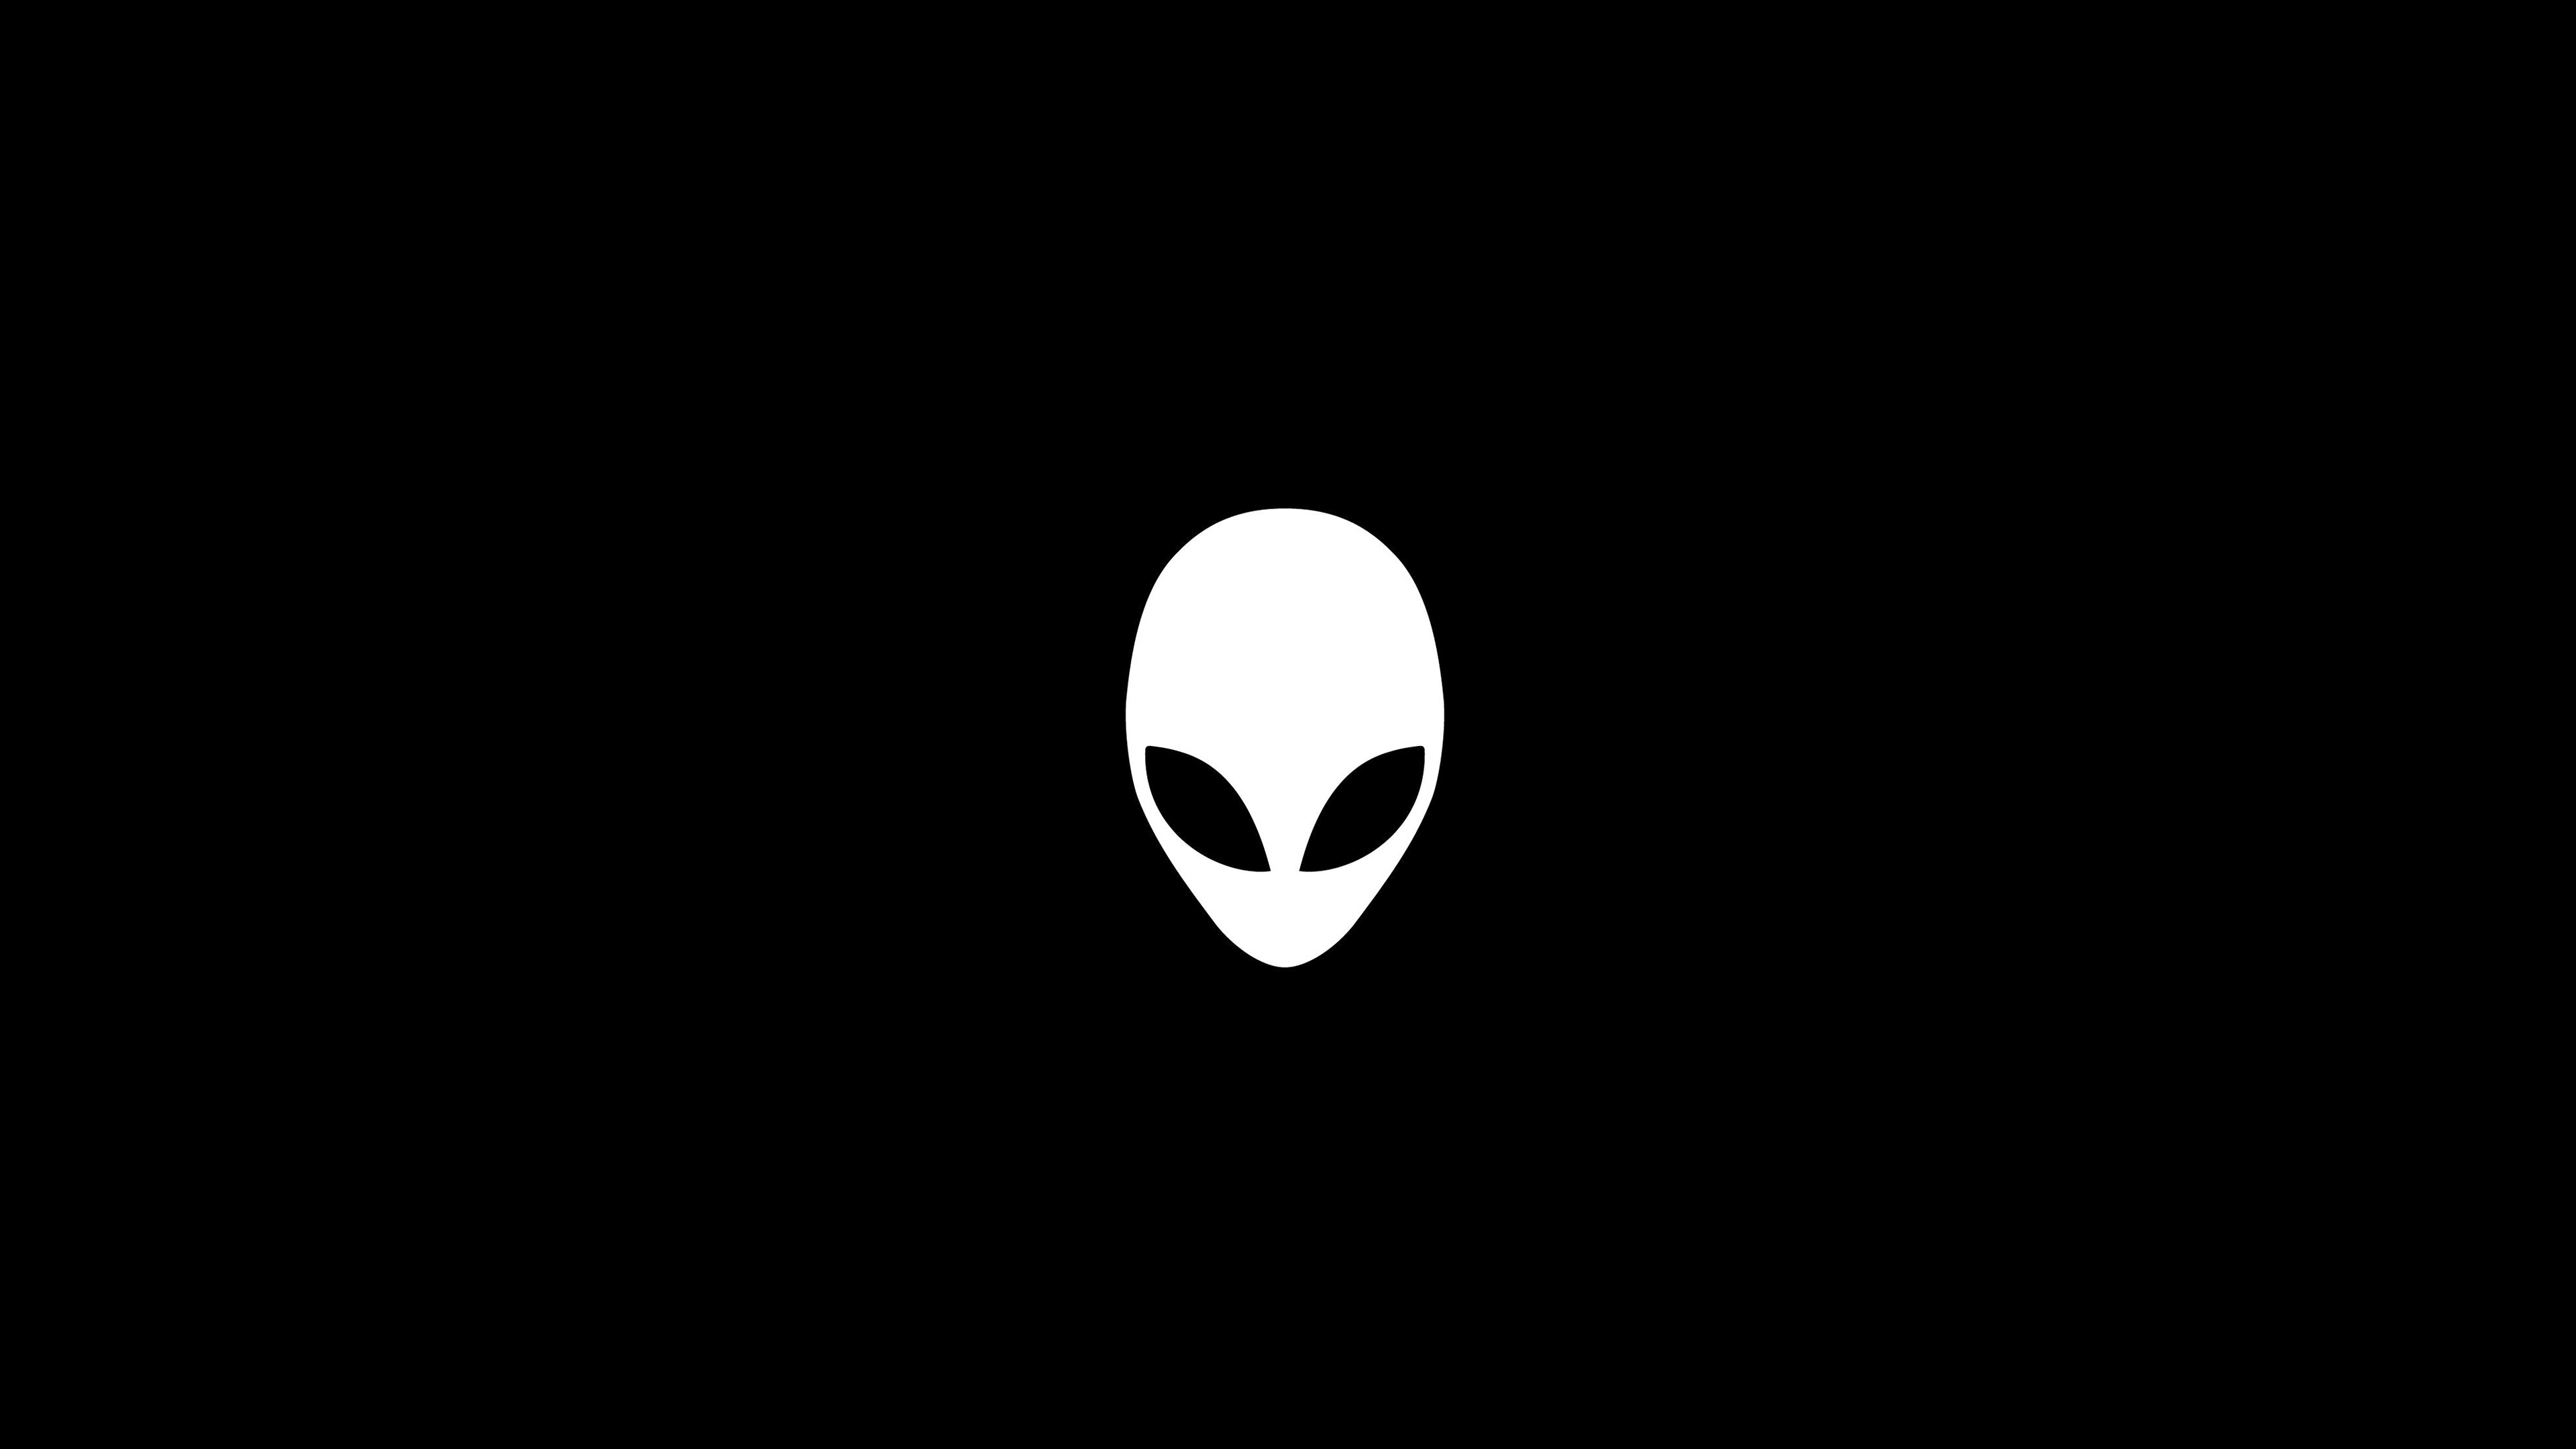 Alienware Logo Wallpapers - Top Free Alienware Logo Backgrounds 3840x2160